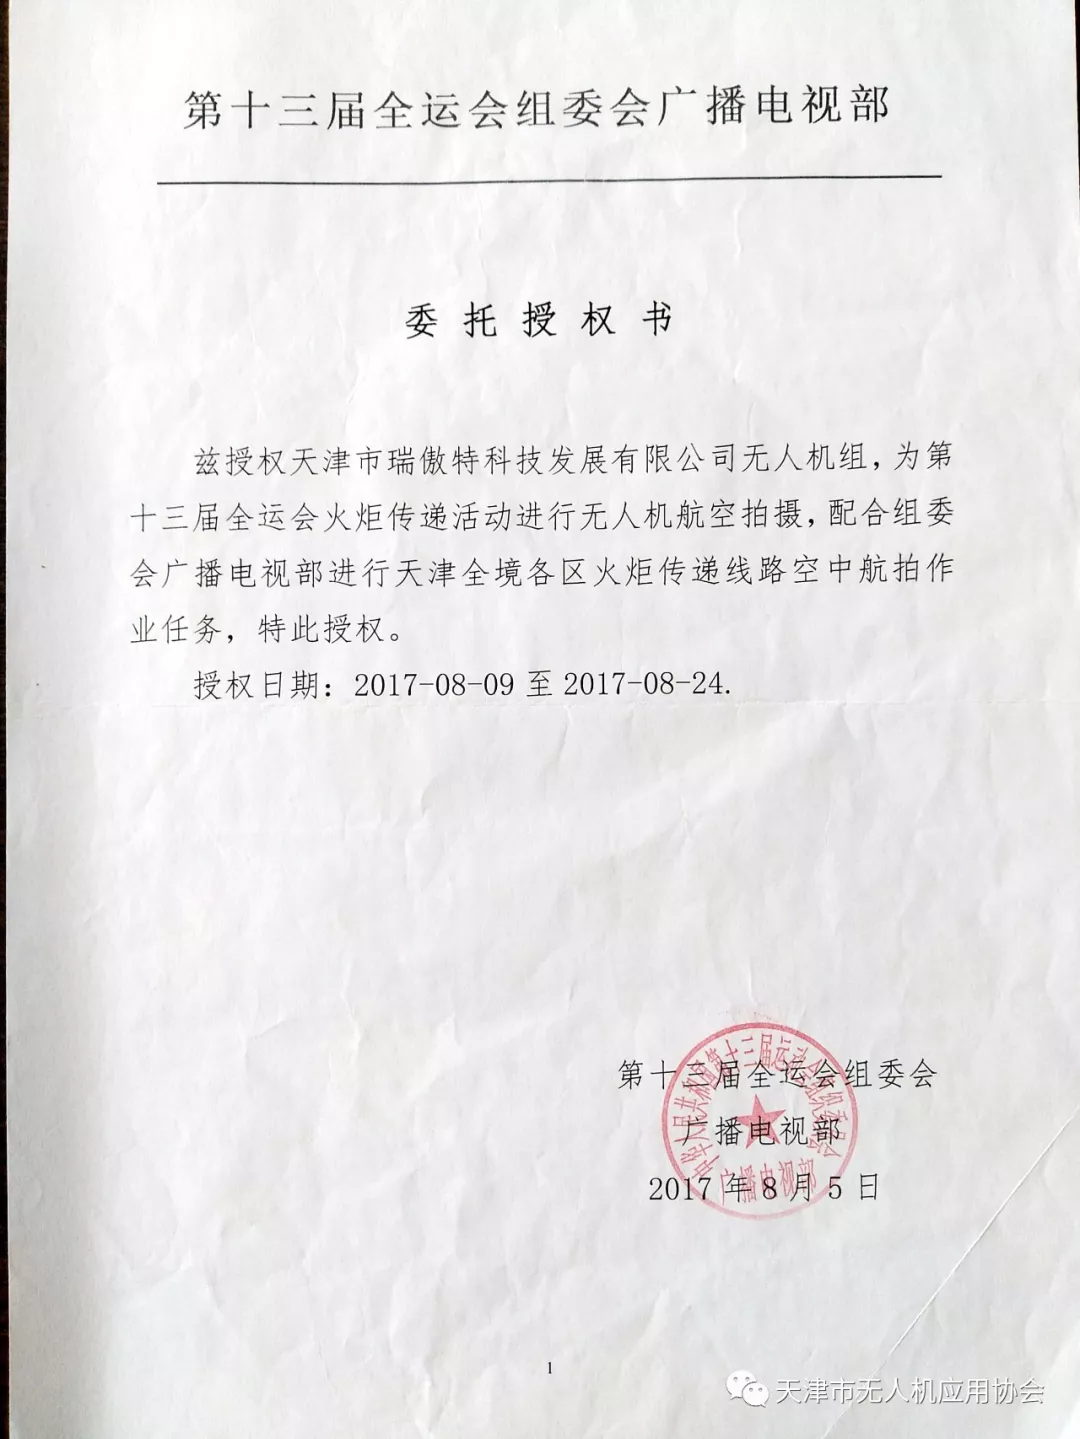 天无协骨干会员单位 天津市瑞傲特科技发展有限公司(图15)